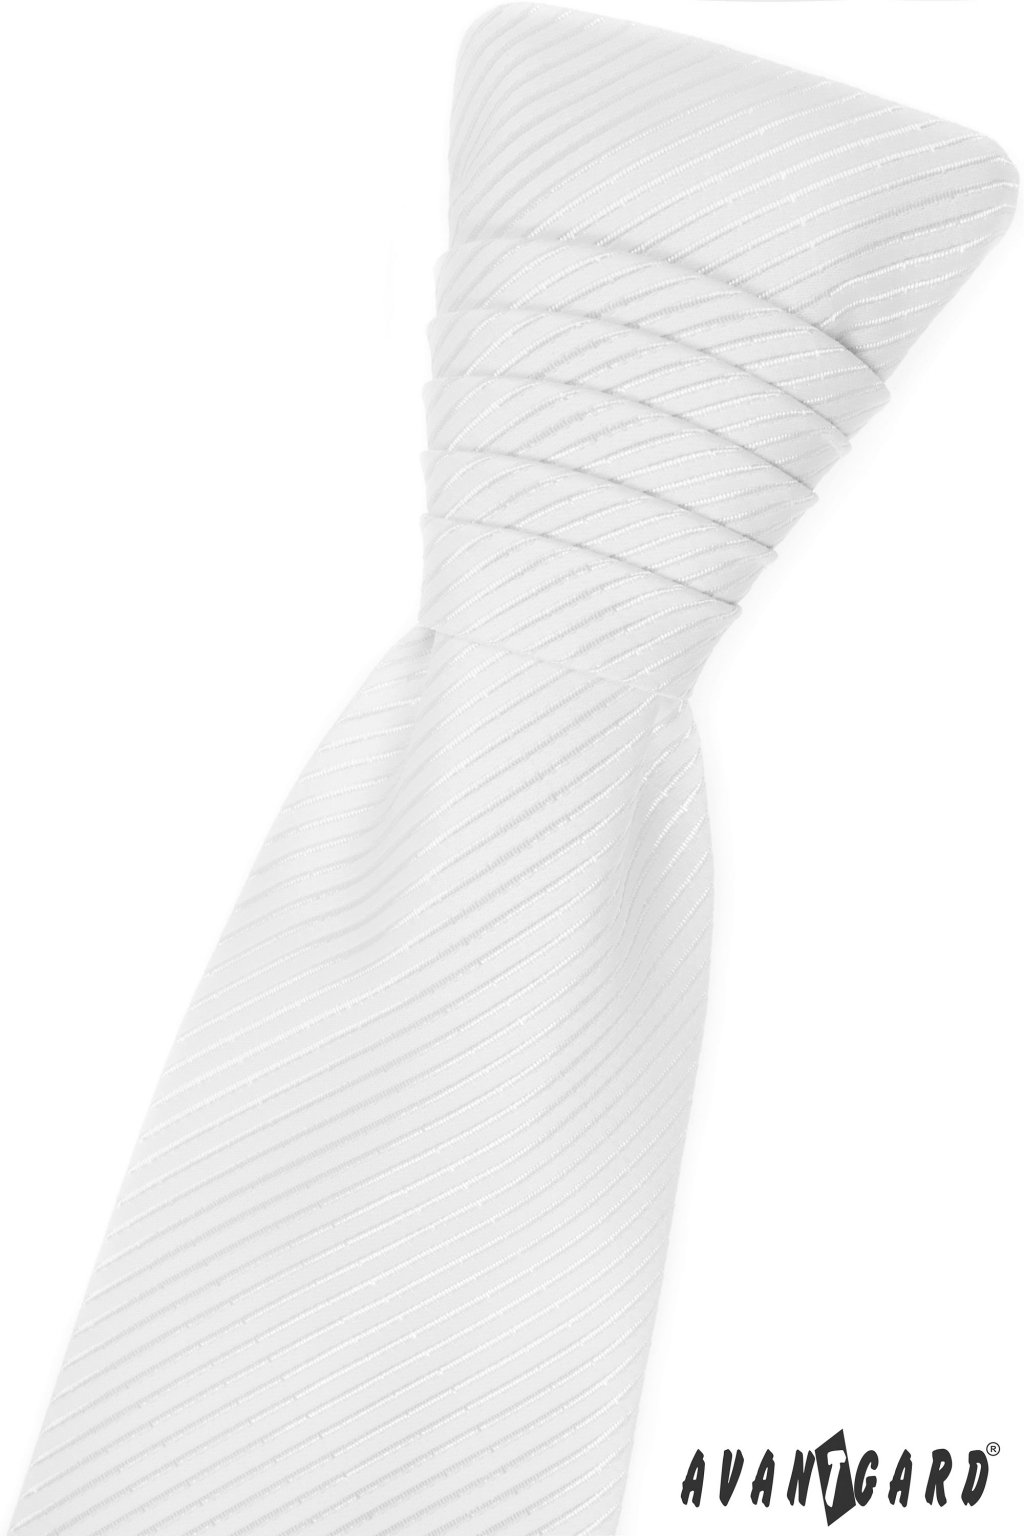 Bílá svatební kravata+ kapesníček